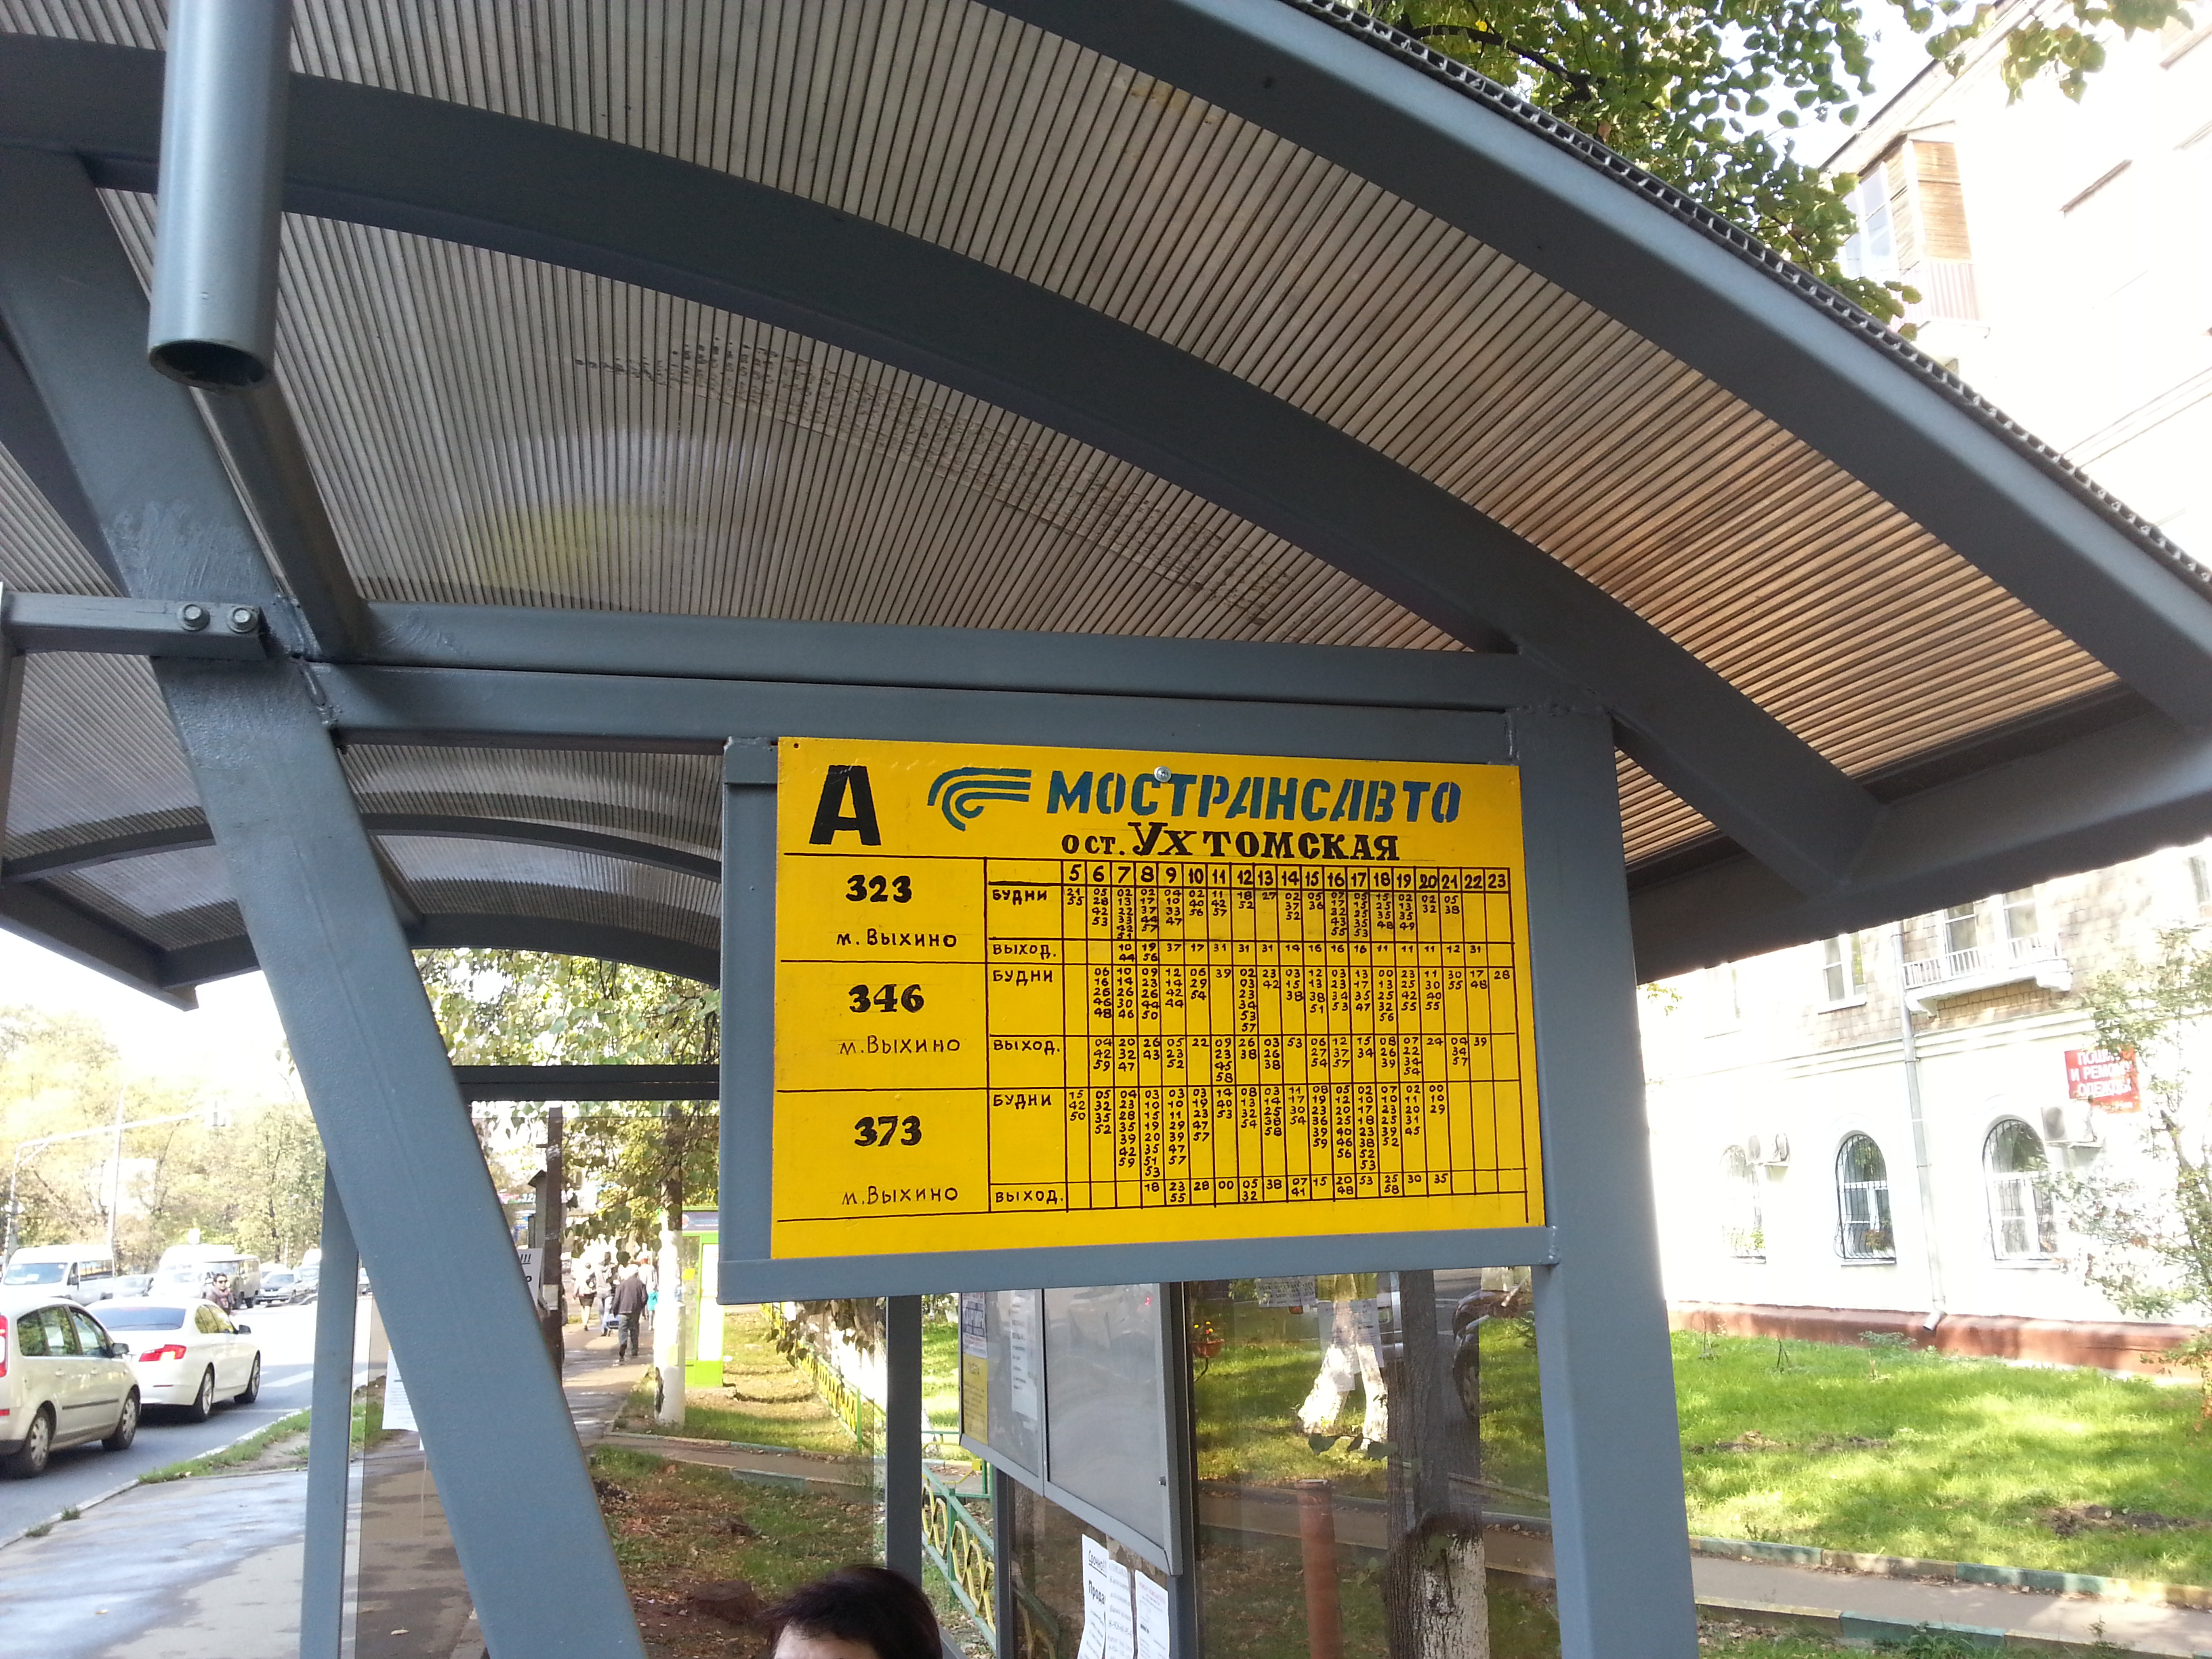 346 выхино коренево. Автобус 346 Коренево-Выхино. Название автобусной остановки. Название остановки автобуса. Остановка в Люберцах.